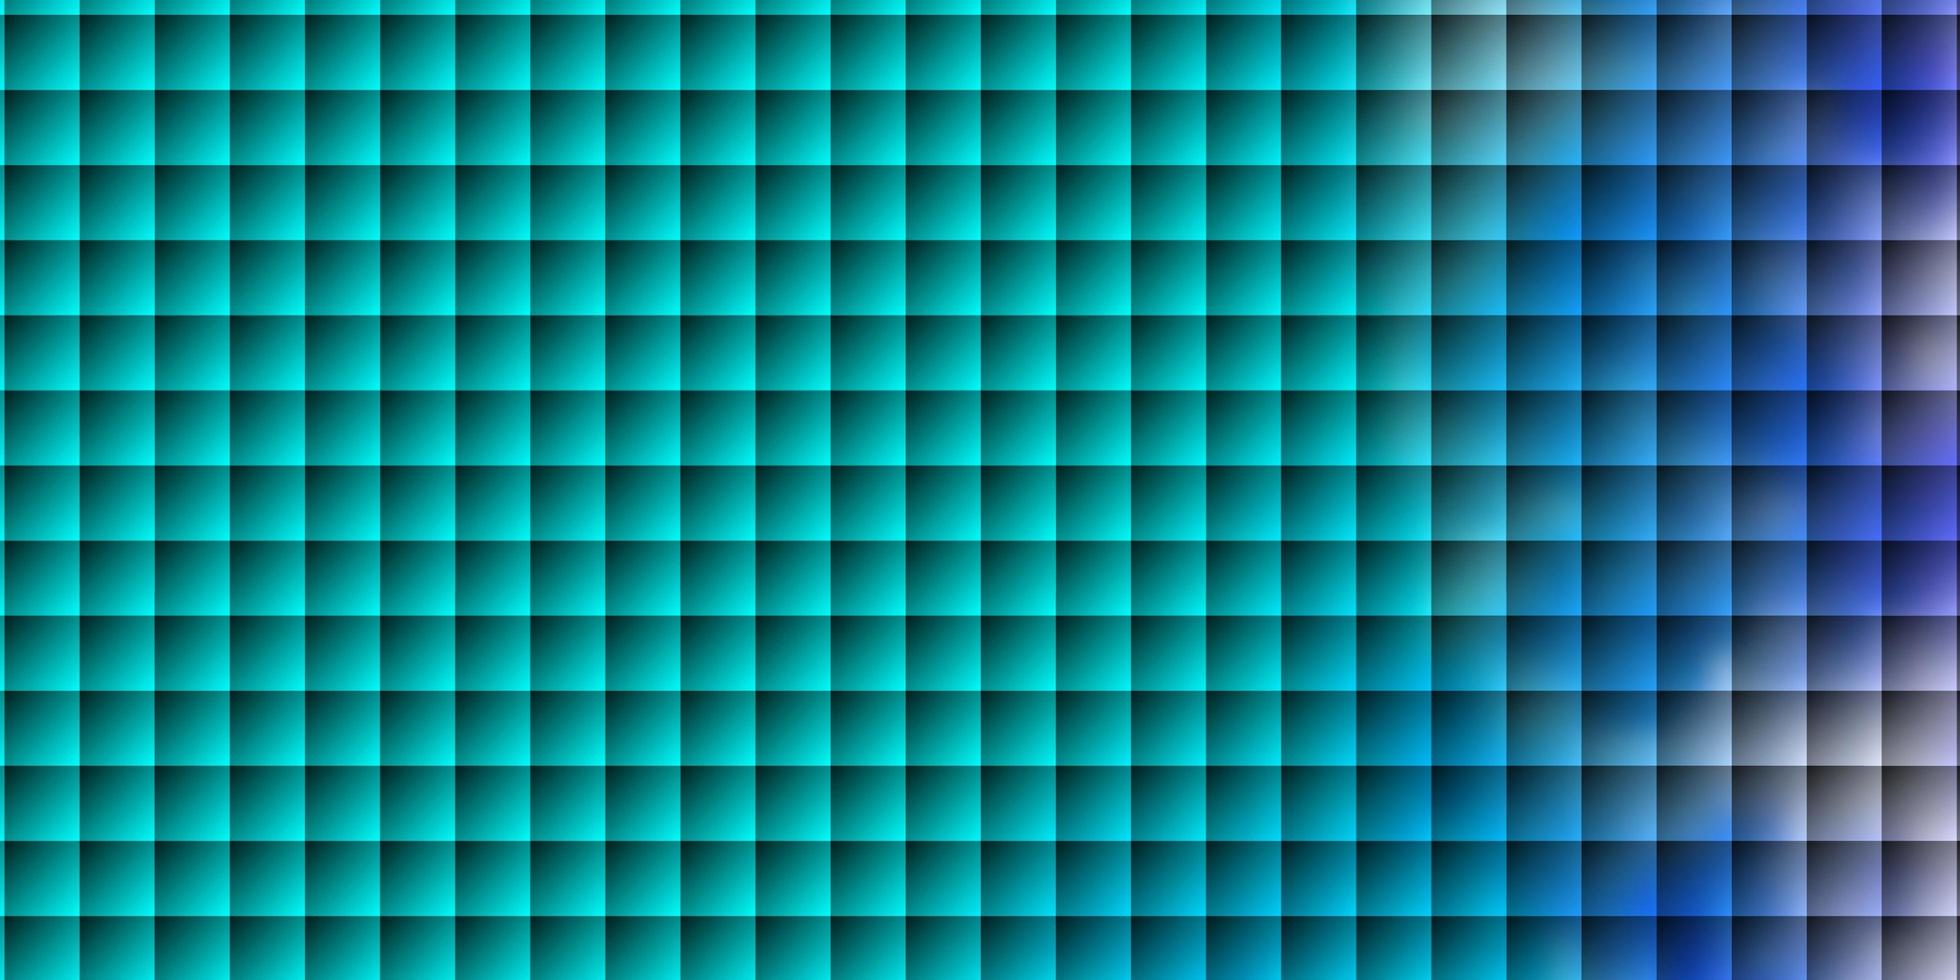 modèle vectoriel rose clair, bleu dans un style carré.